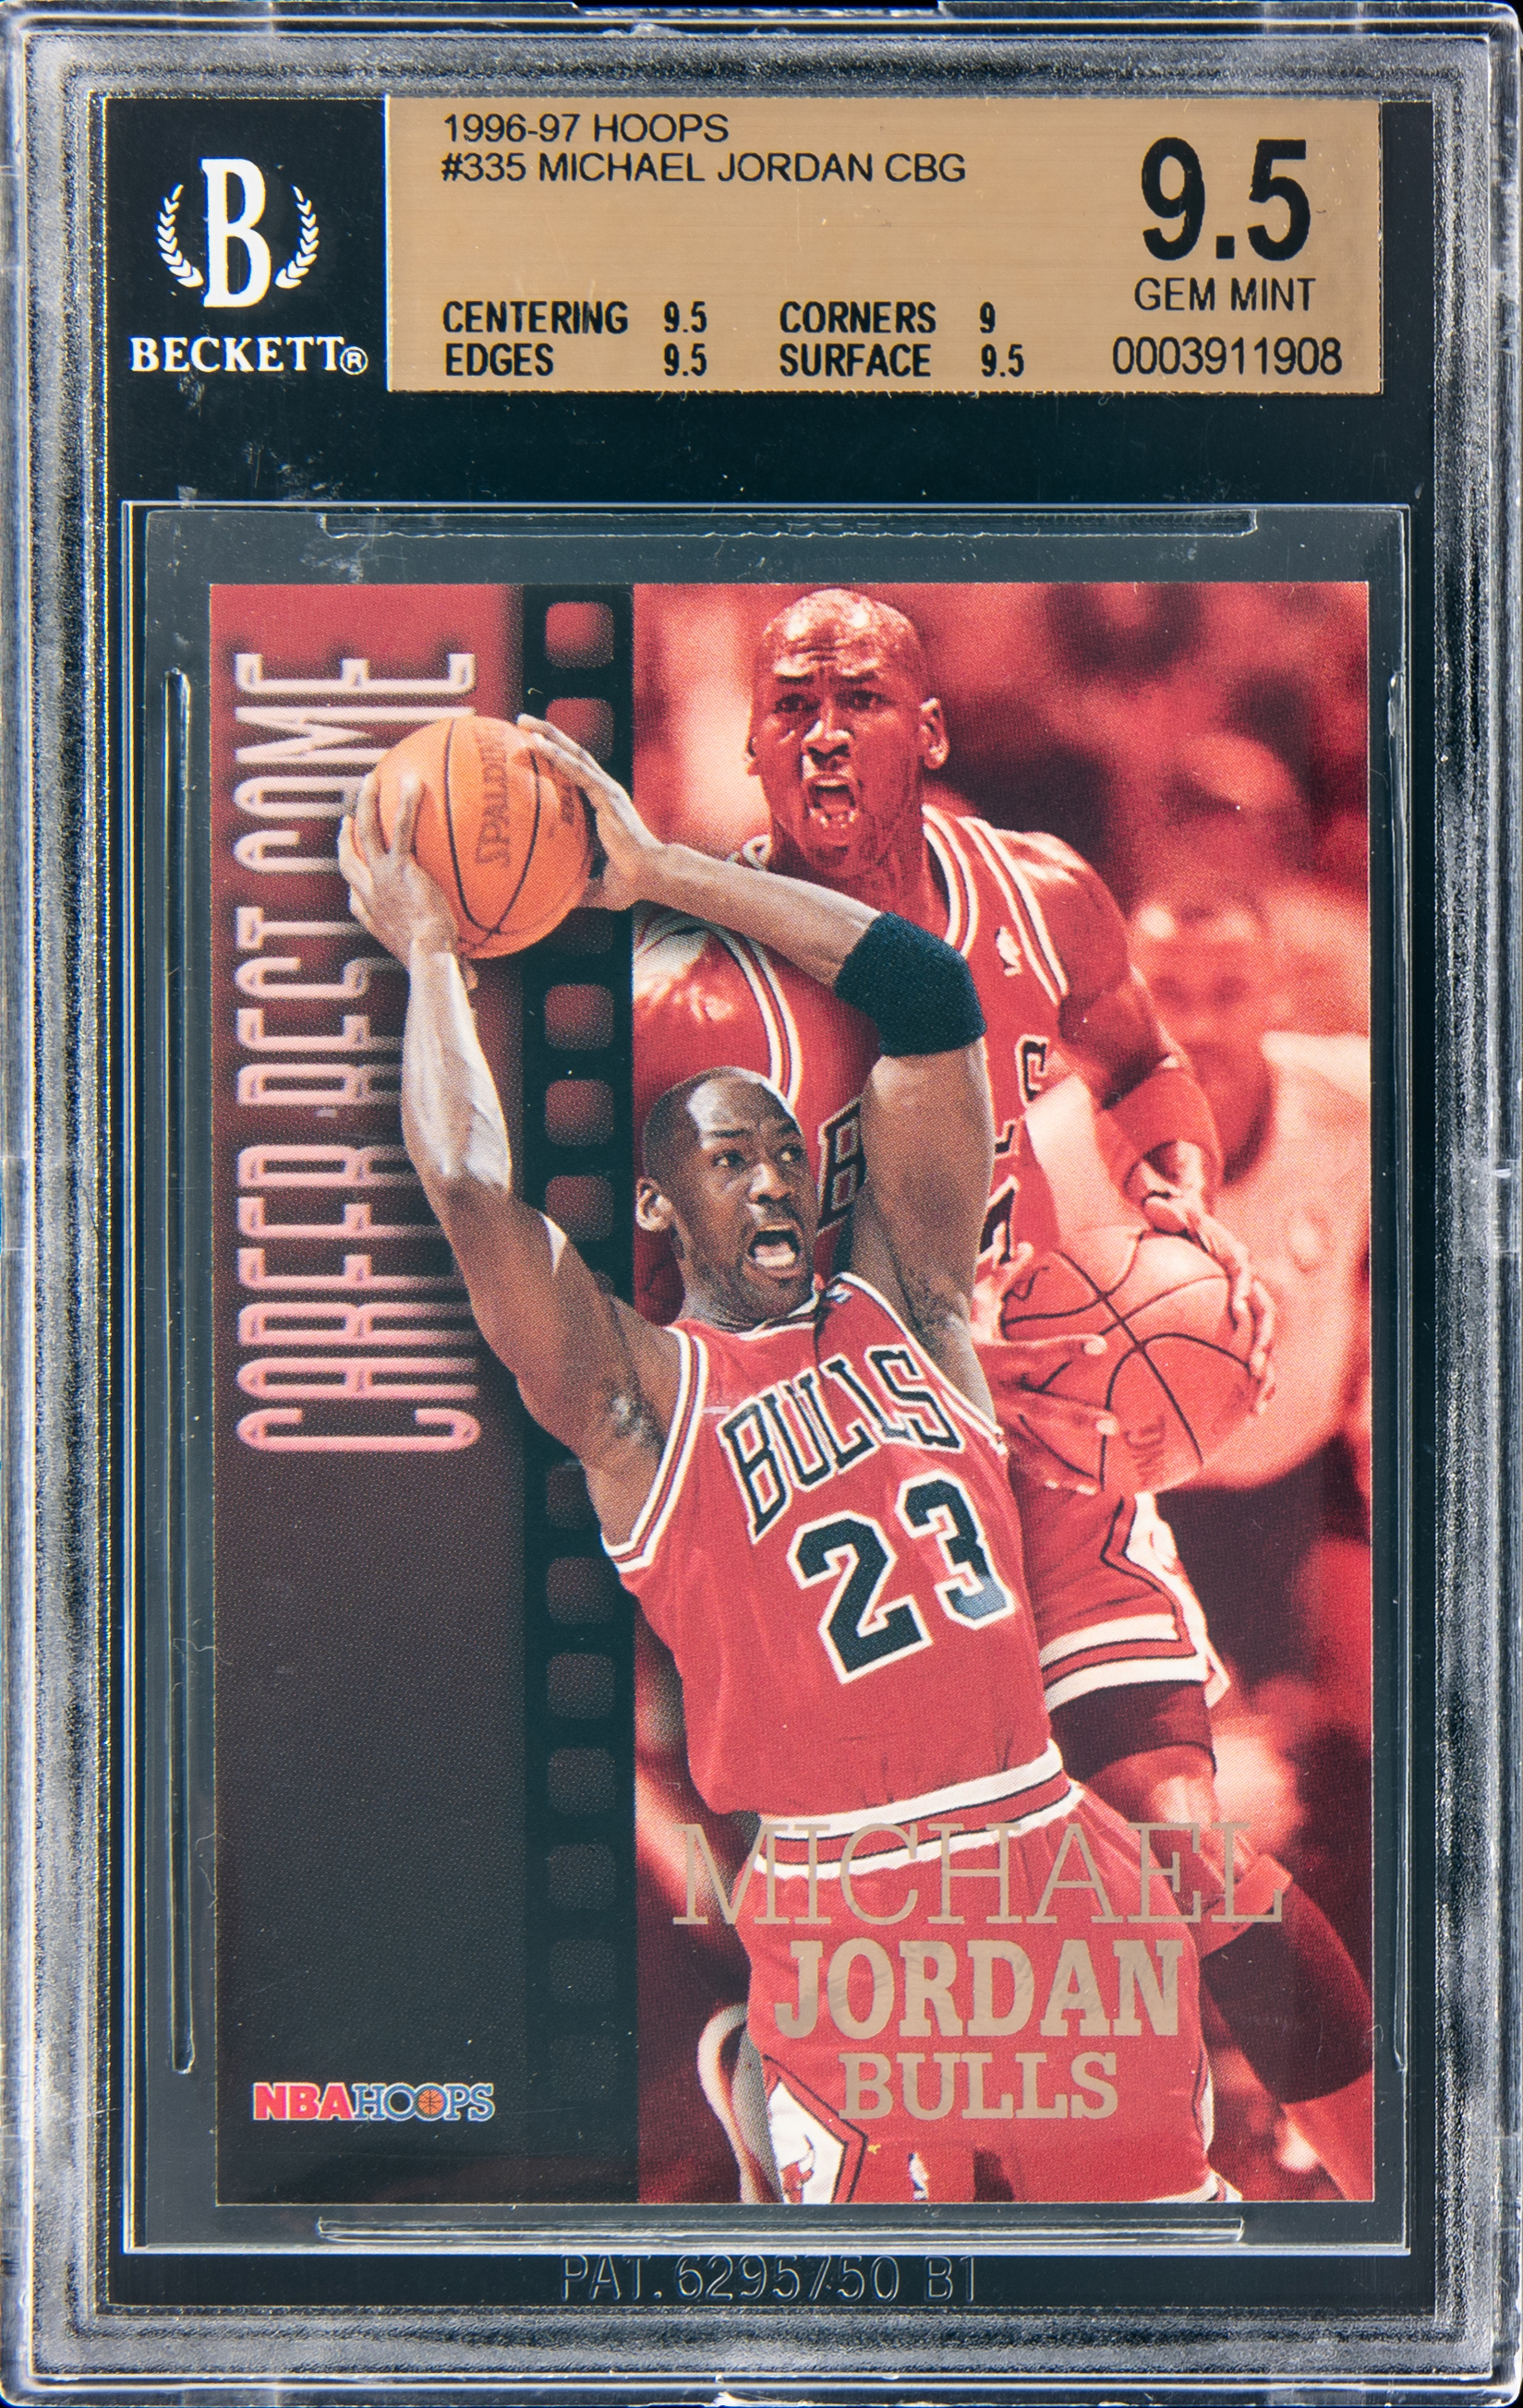 1996-97 Hoops Career Best Game #335 Michael Jordan – BGS GEM MINT 9.5